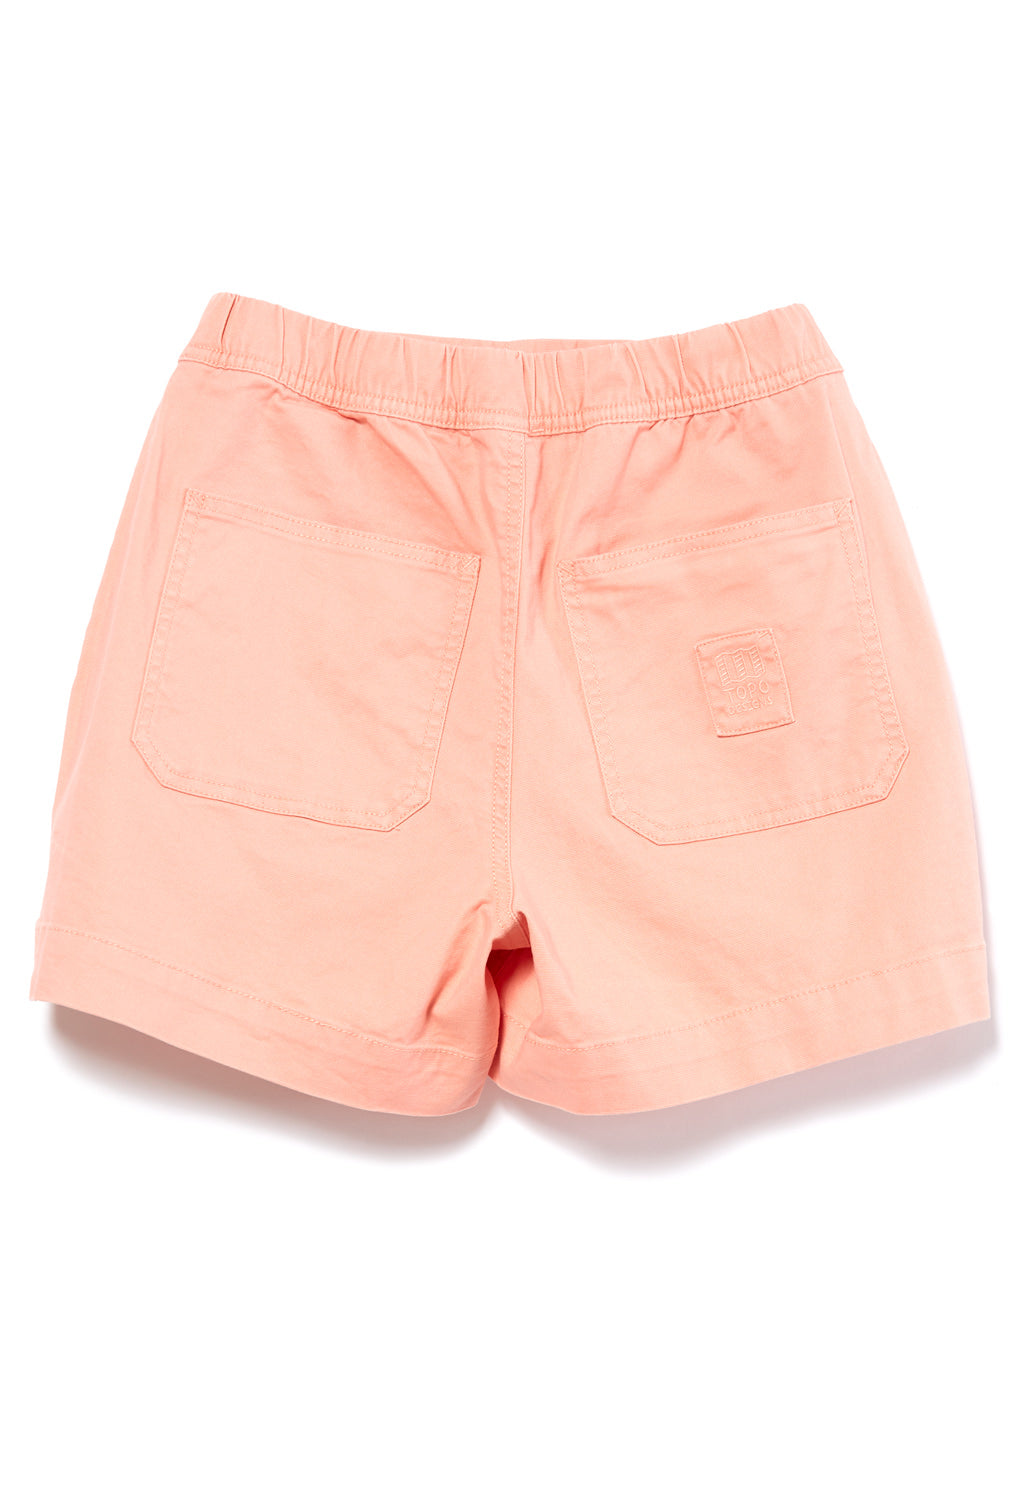 Topo Designs Dirt Women's Shorts - Peach